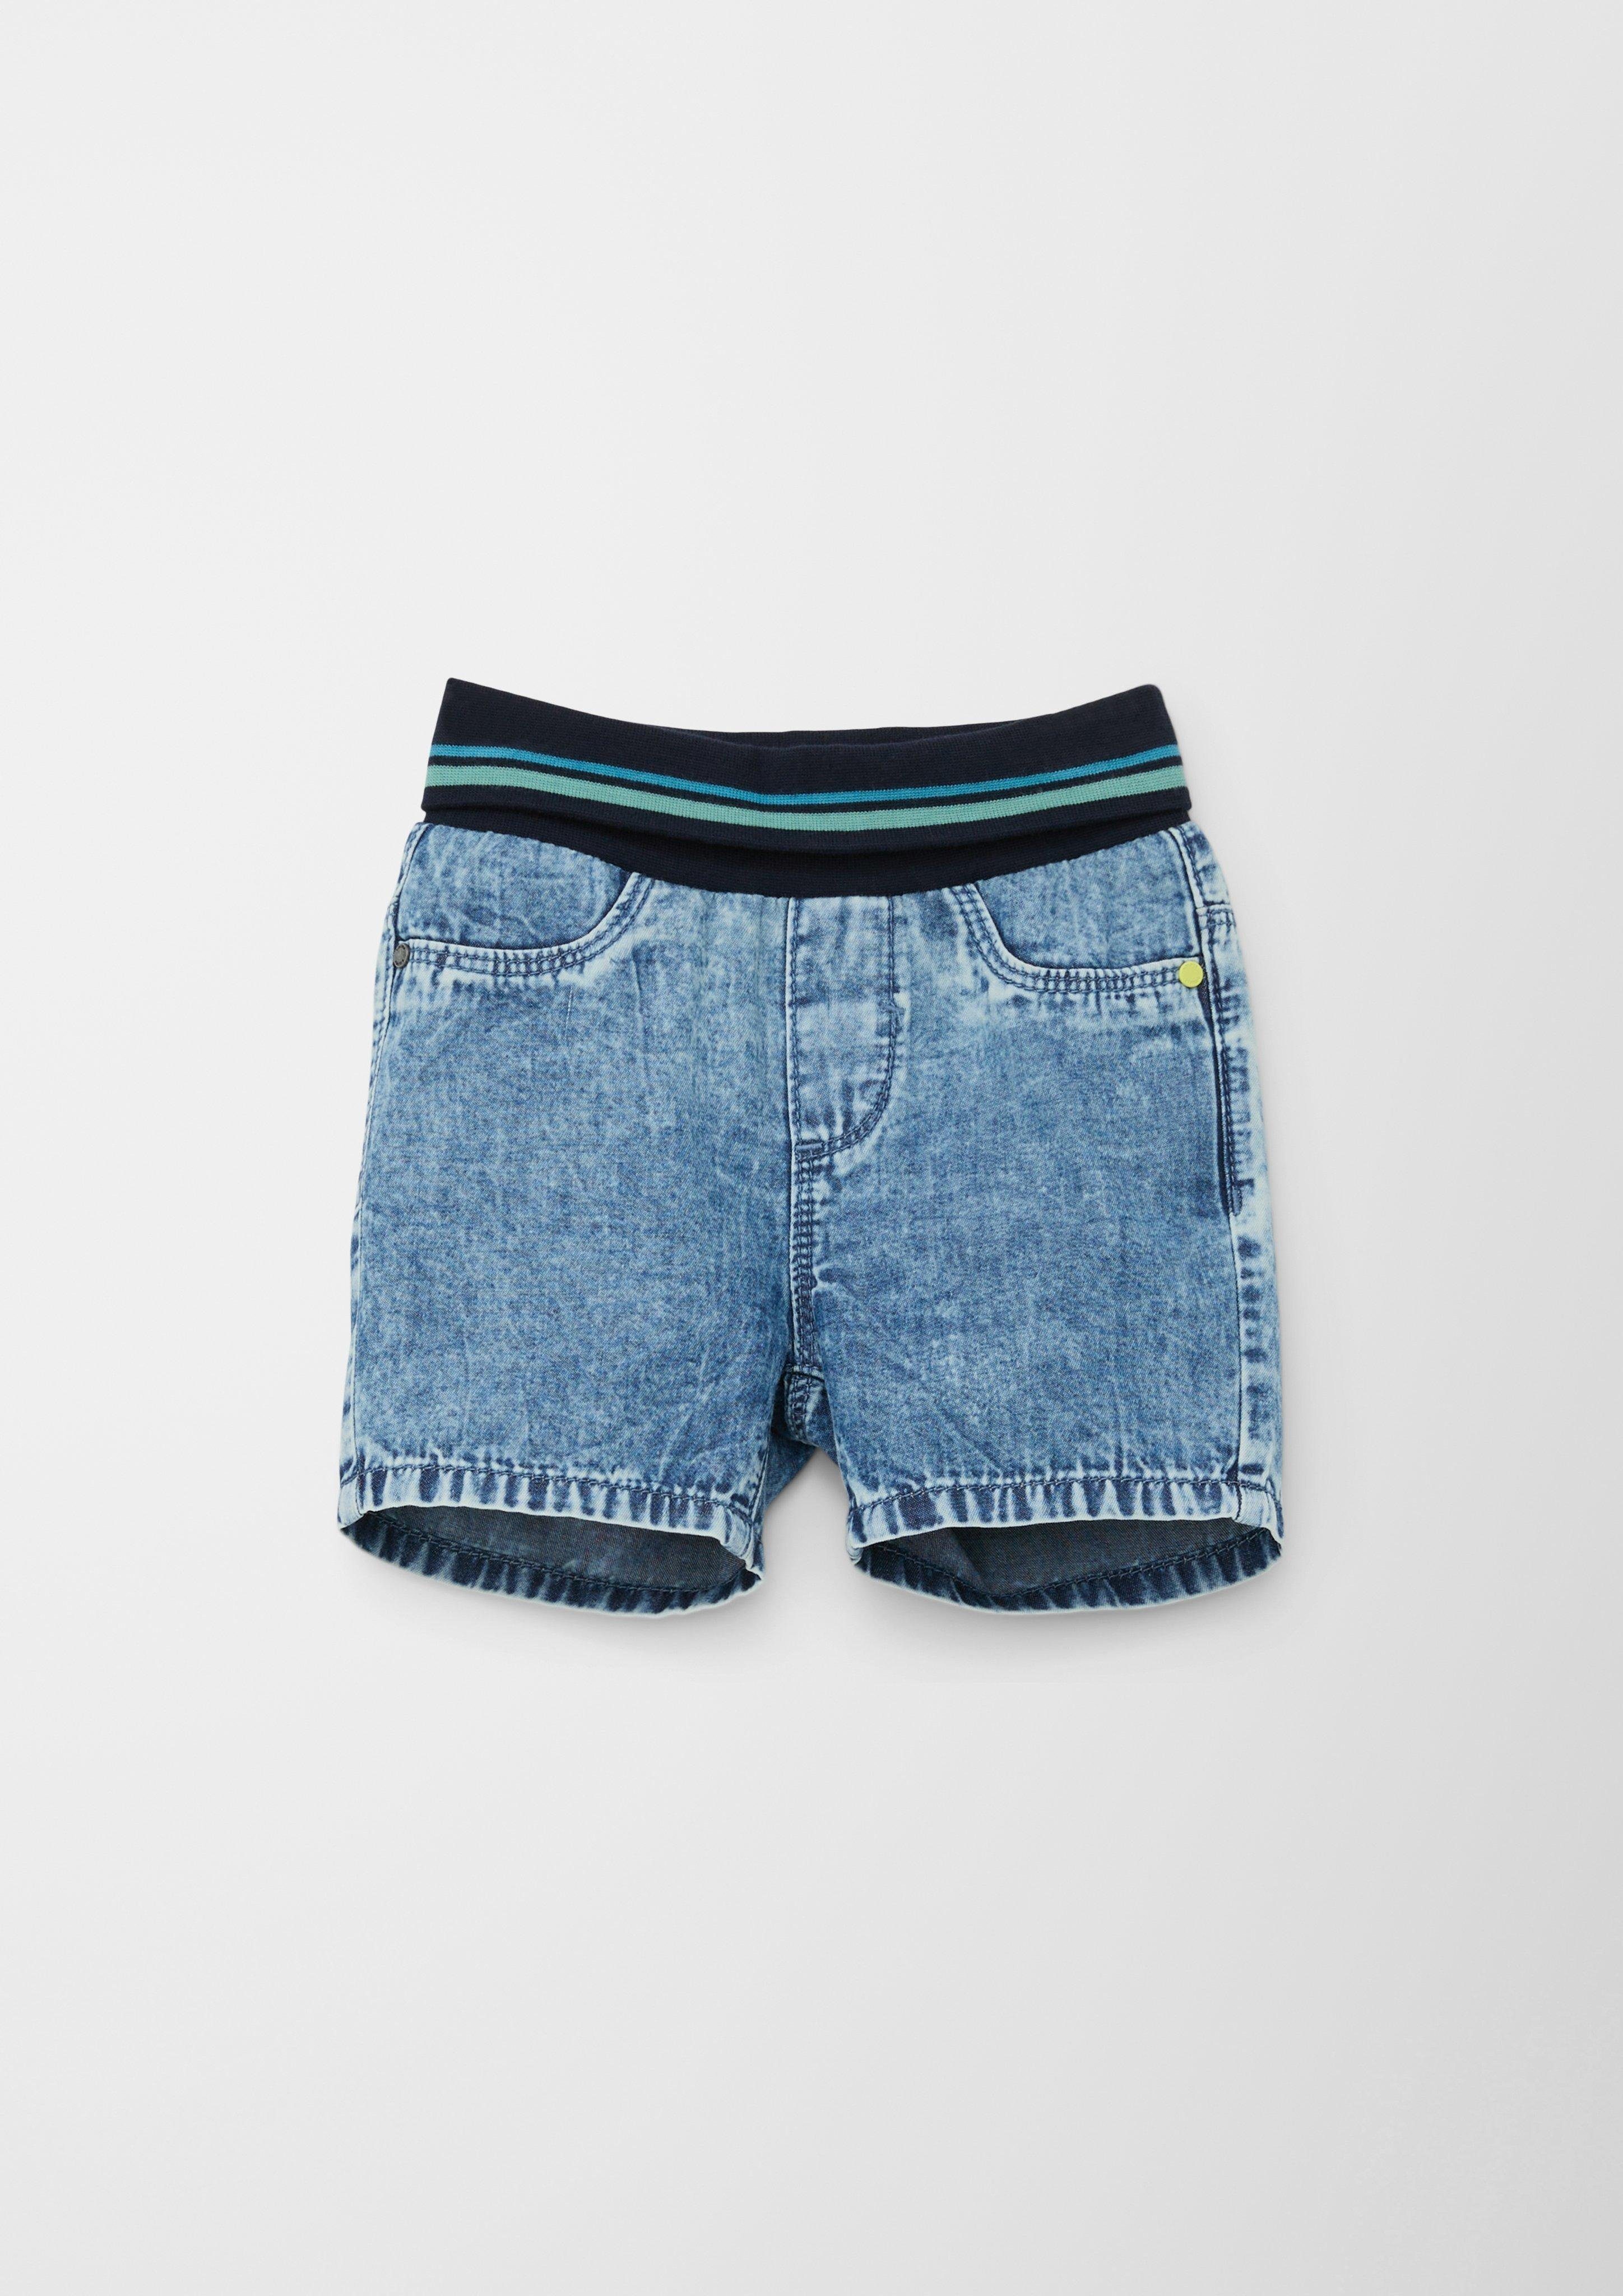 Regular Rise / Fit Shorts / Leg High Kontrast-Details Straight / Jeans-Shorts s.Oliver